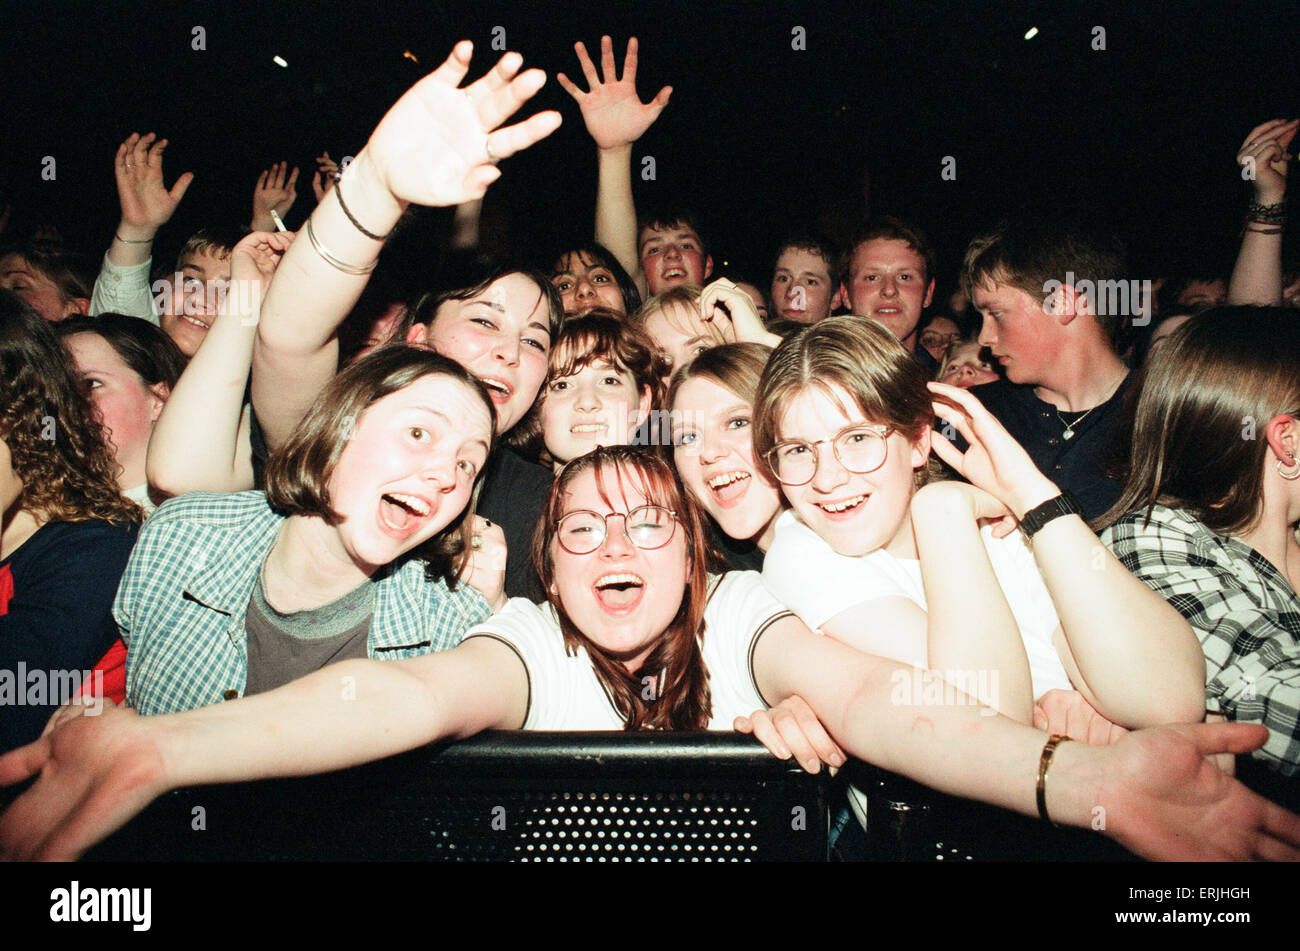 Jugar al centro de Clickimin pulpa, Shetland, 13 de agosto de 1996. Seguidores y partidarios. Foto de stock